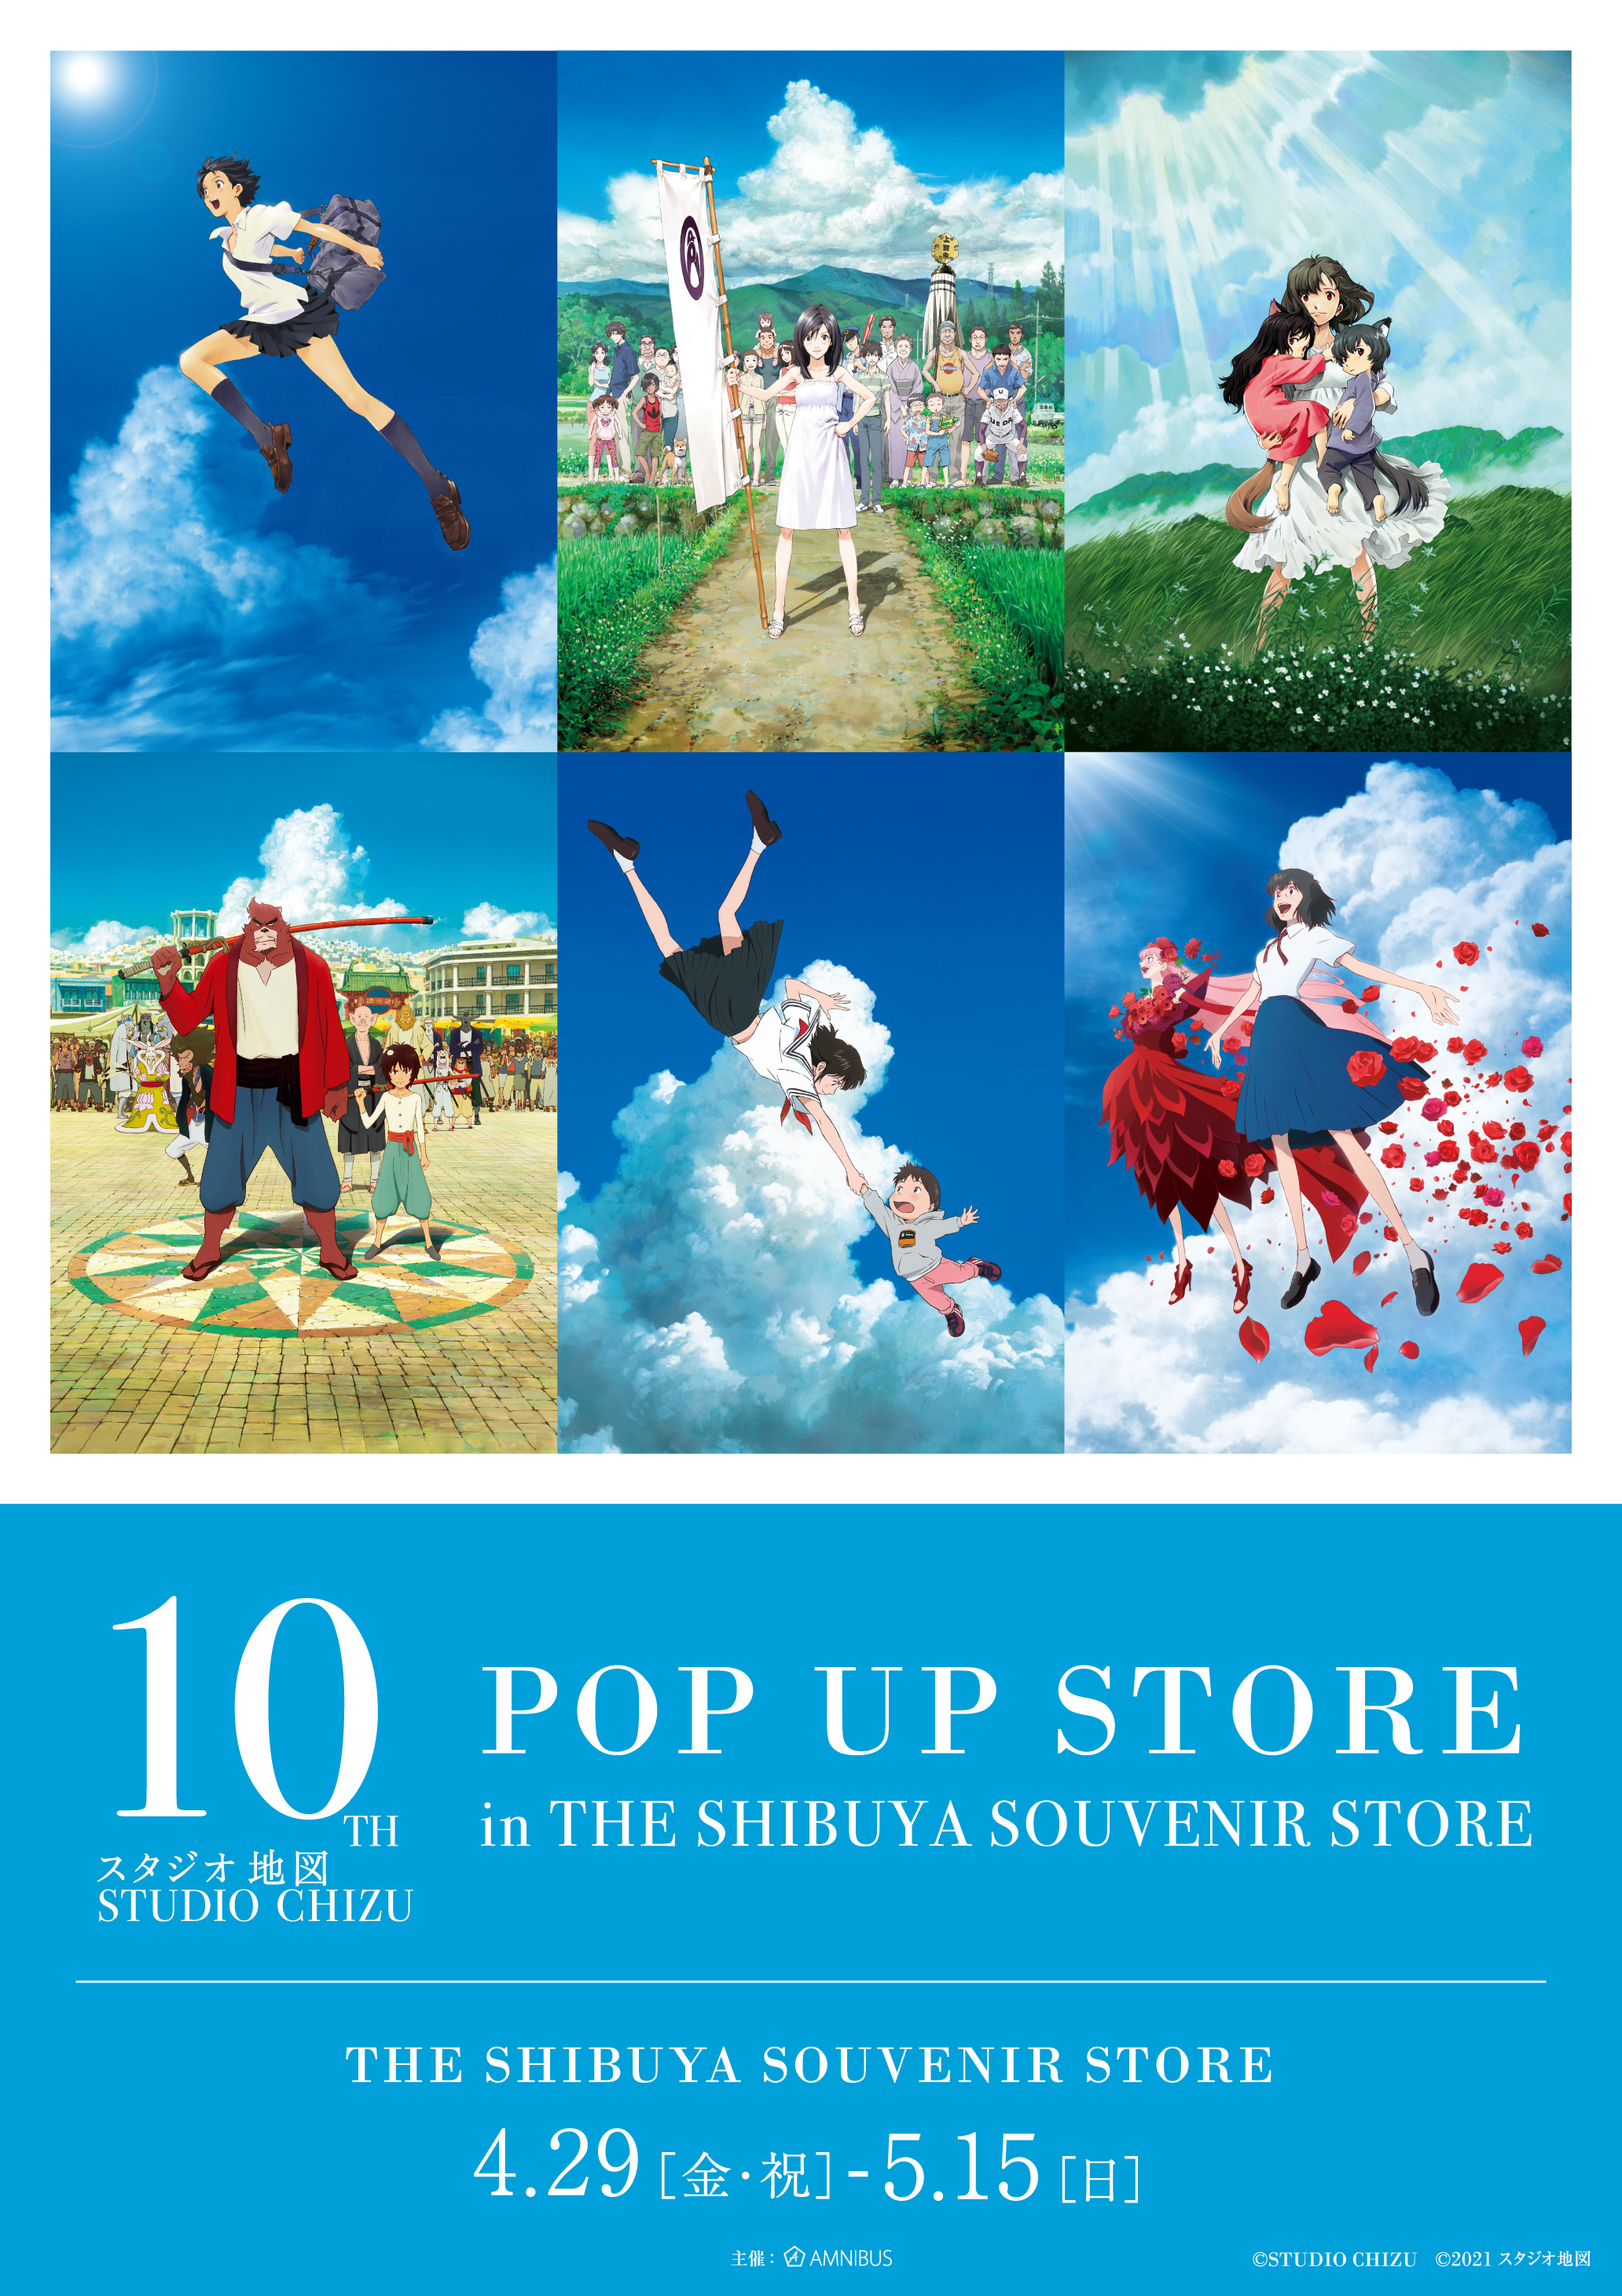 『スタジオ地図10th POP UP STORE in THE SHIBUYA SOUVENIR STORE』